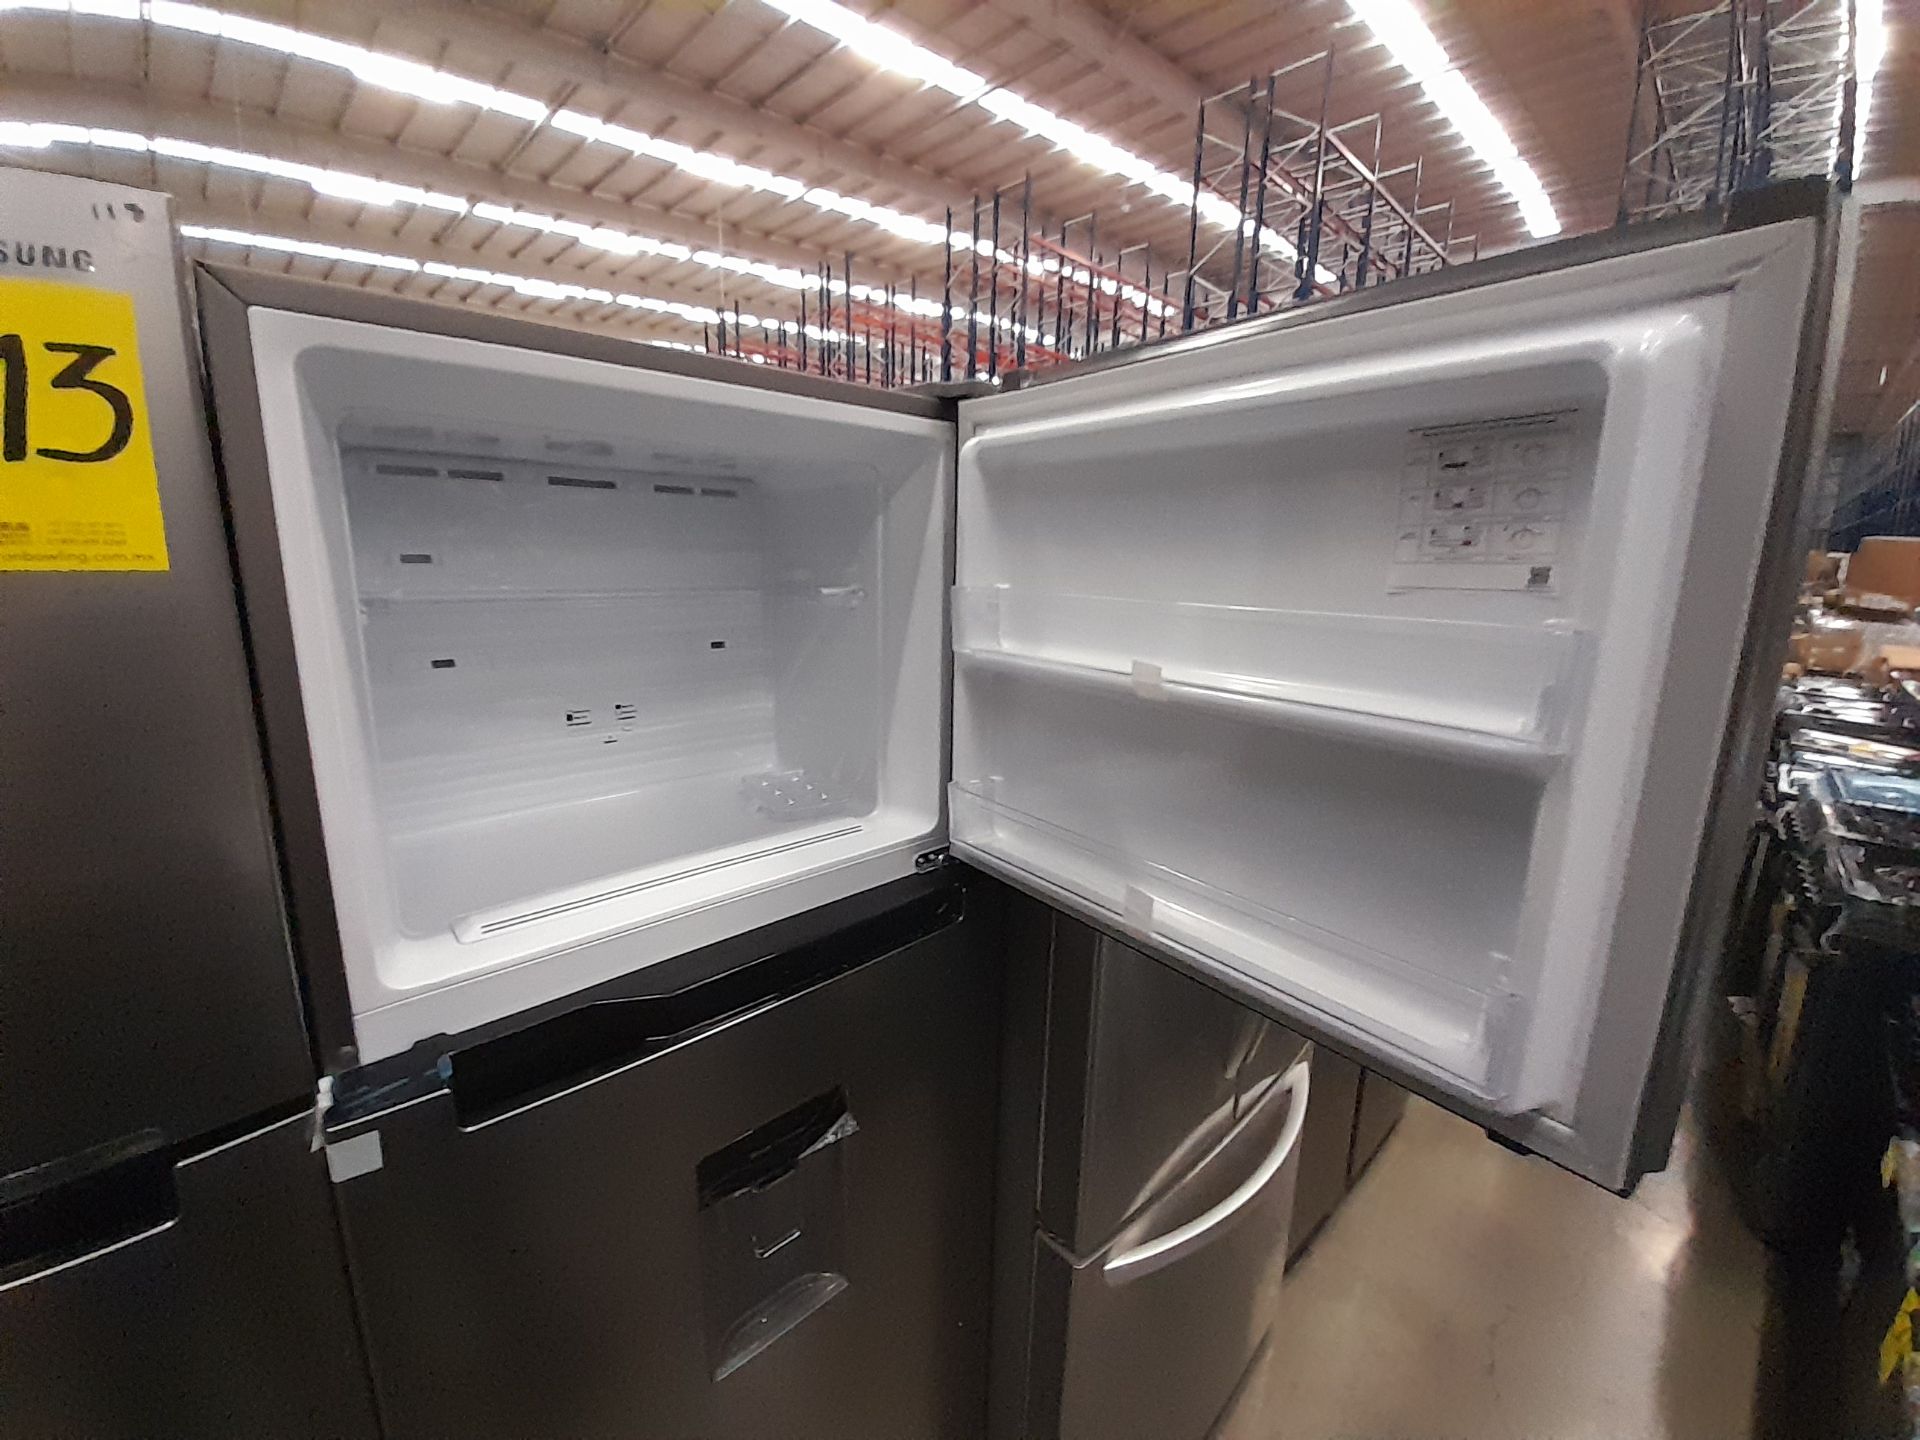 Lote de 2 refrigeradores contiene: 1 refrigerador Marca SAMSUNG, Modelo RT38A57IJS9, Serie 01144F, - Image 4 of 8